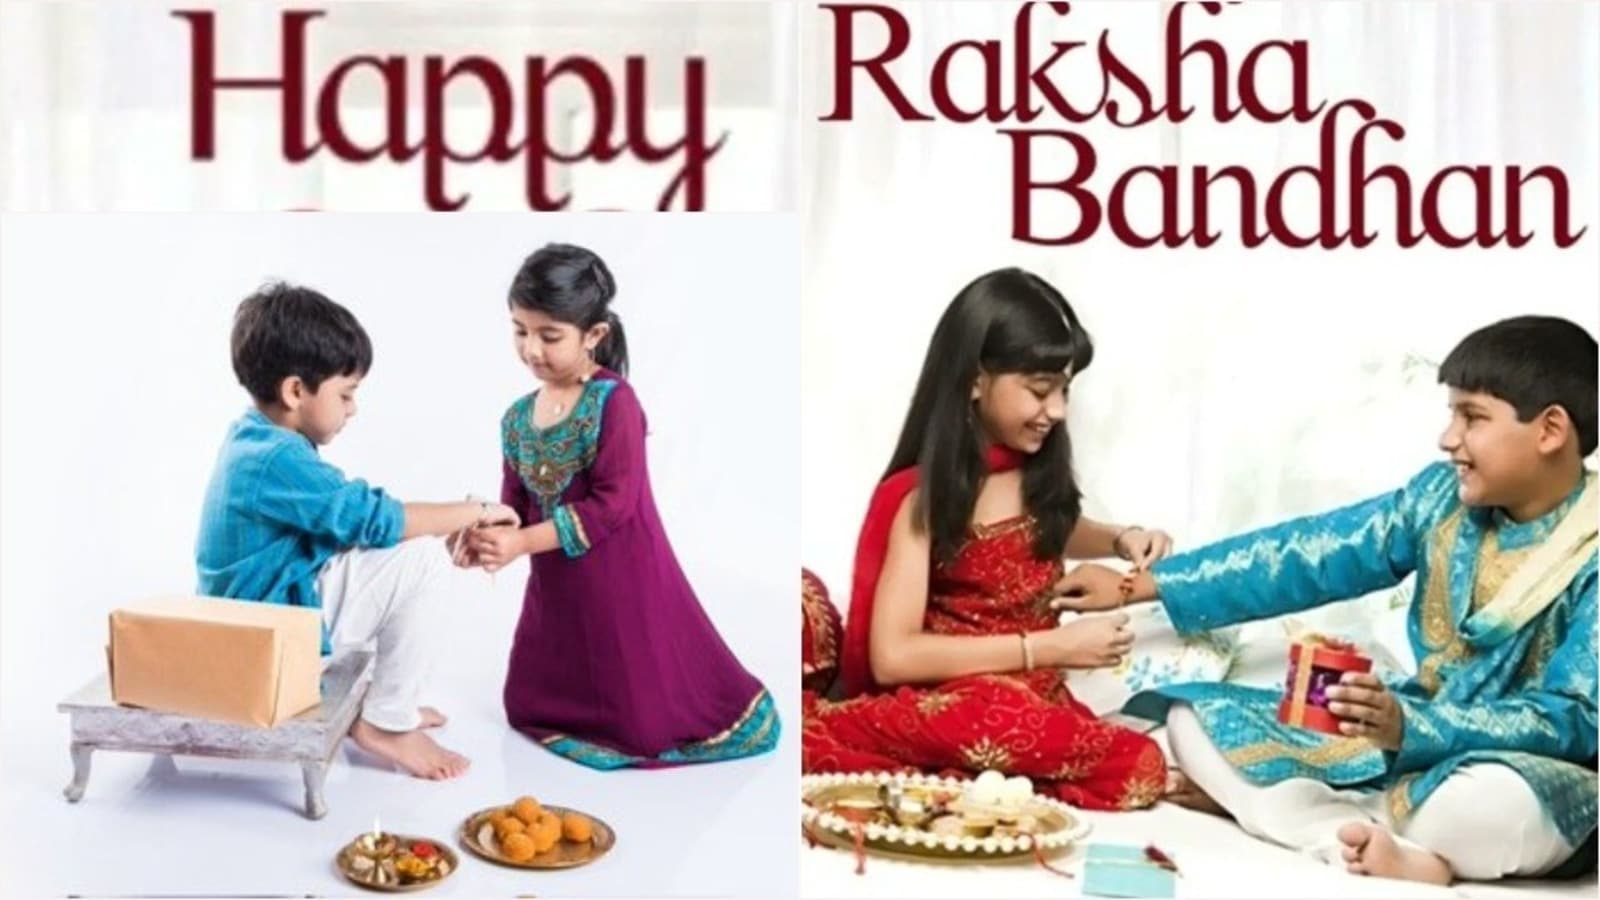 Raksha Bandhan 2021 Date, muhurat, history, celebration of Rakhi in